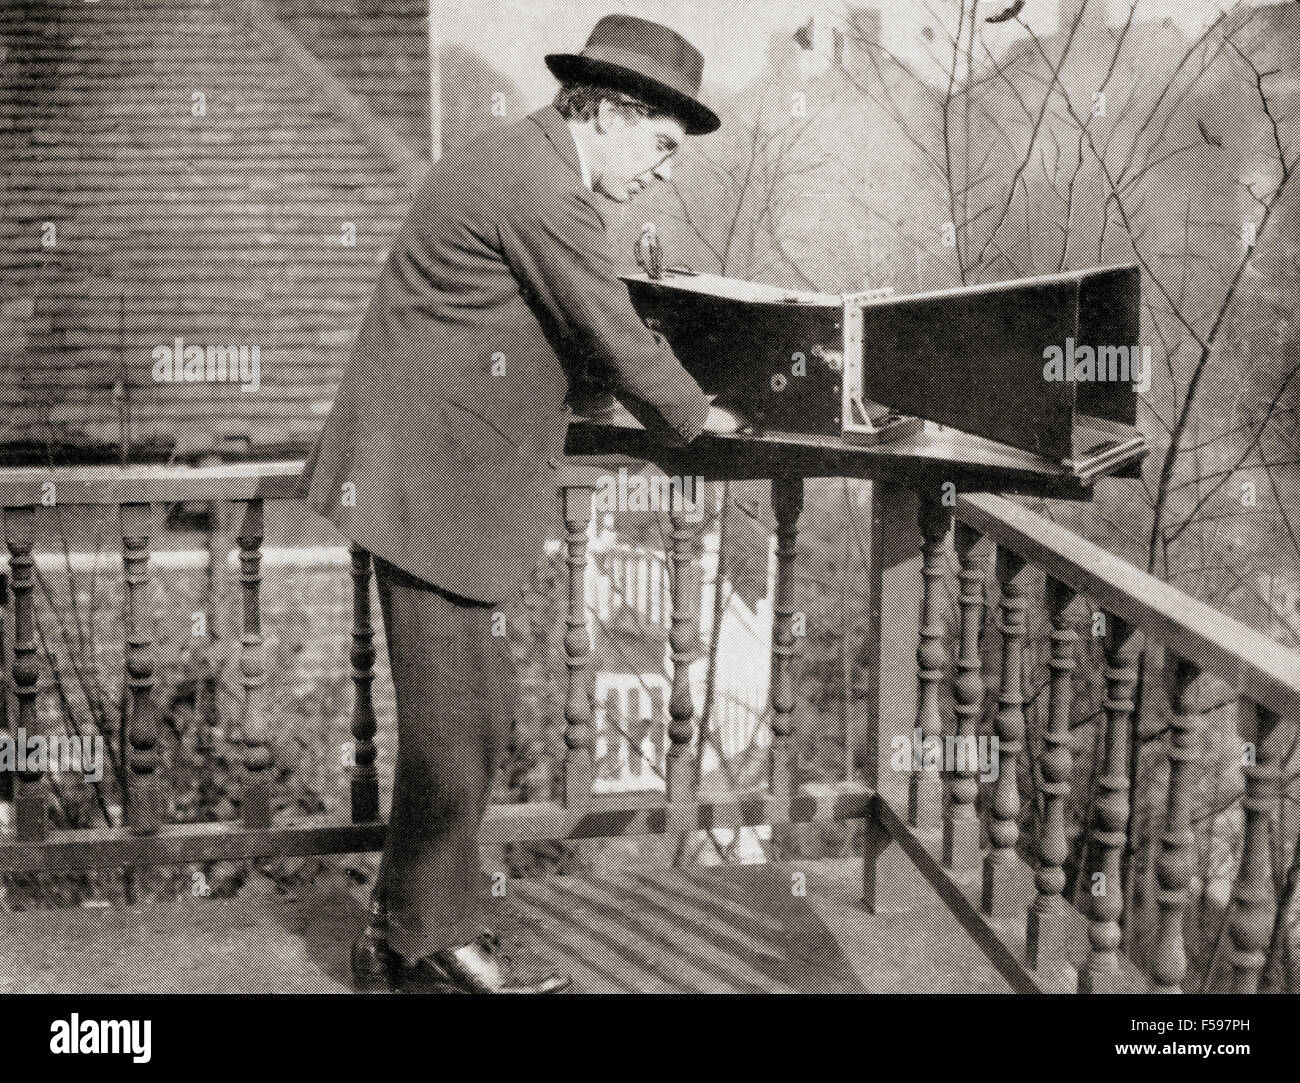 Archibald Montgomery niedrig, 1888-1956.   Englisch, Beratung, Ingenieur, Forschung Physiker, Erfinder und Autor.  Hier zu sehen mit dem Audiometer erfunden er Foto Lärm. Stockfoto